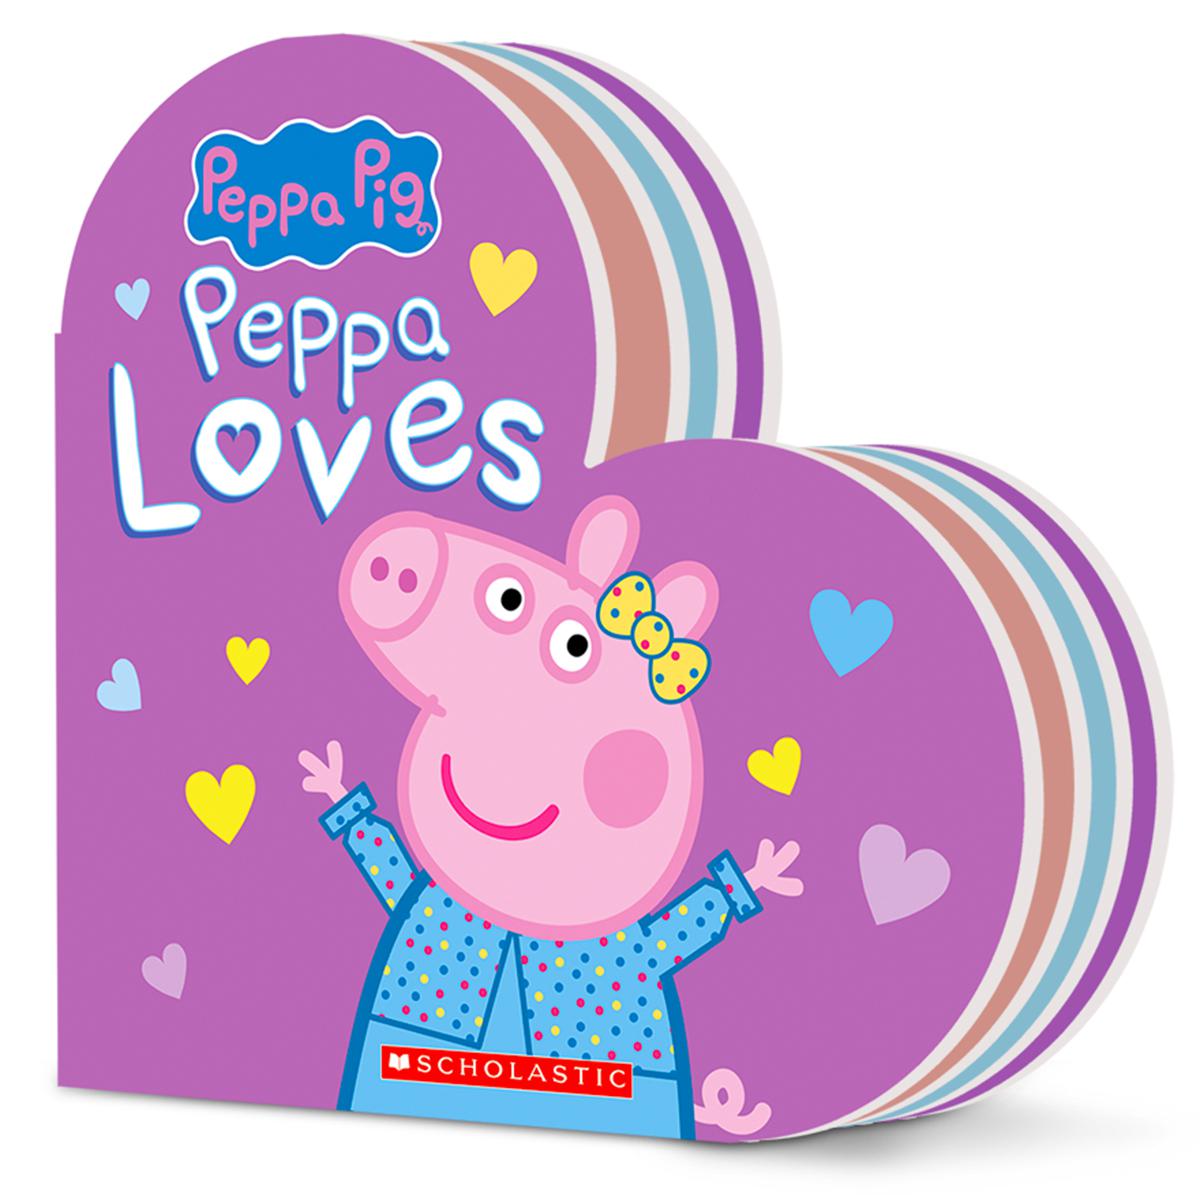  Peppa Pig: Peppa Loves 